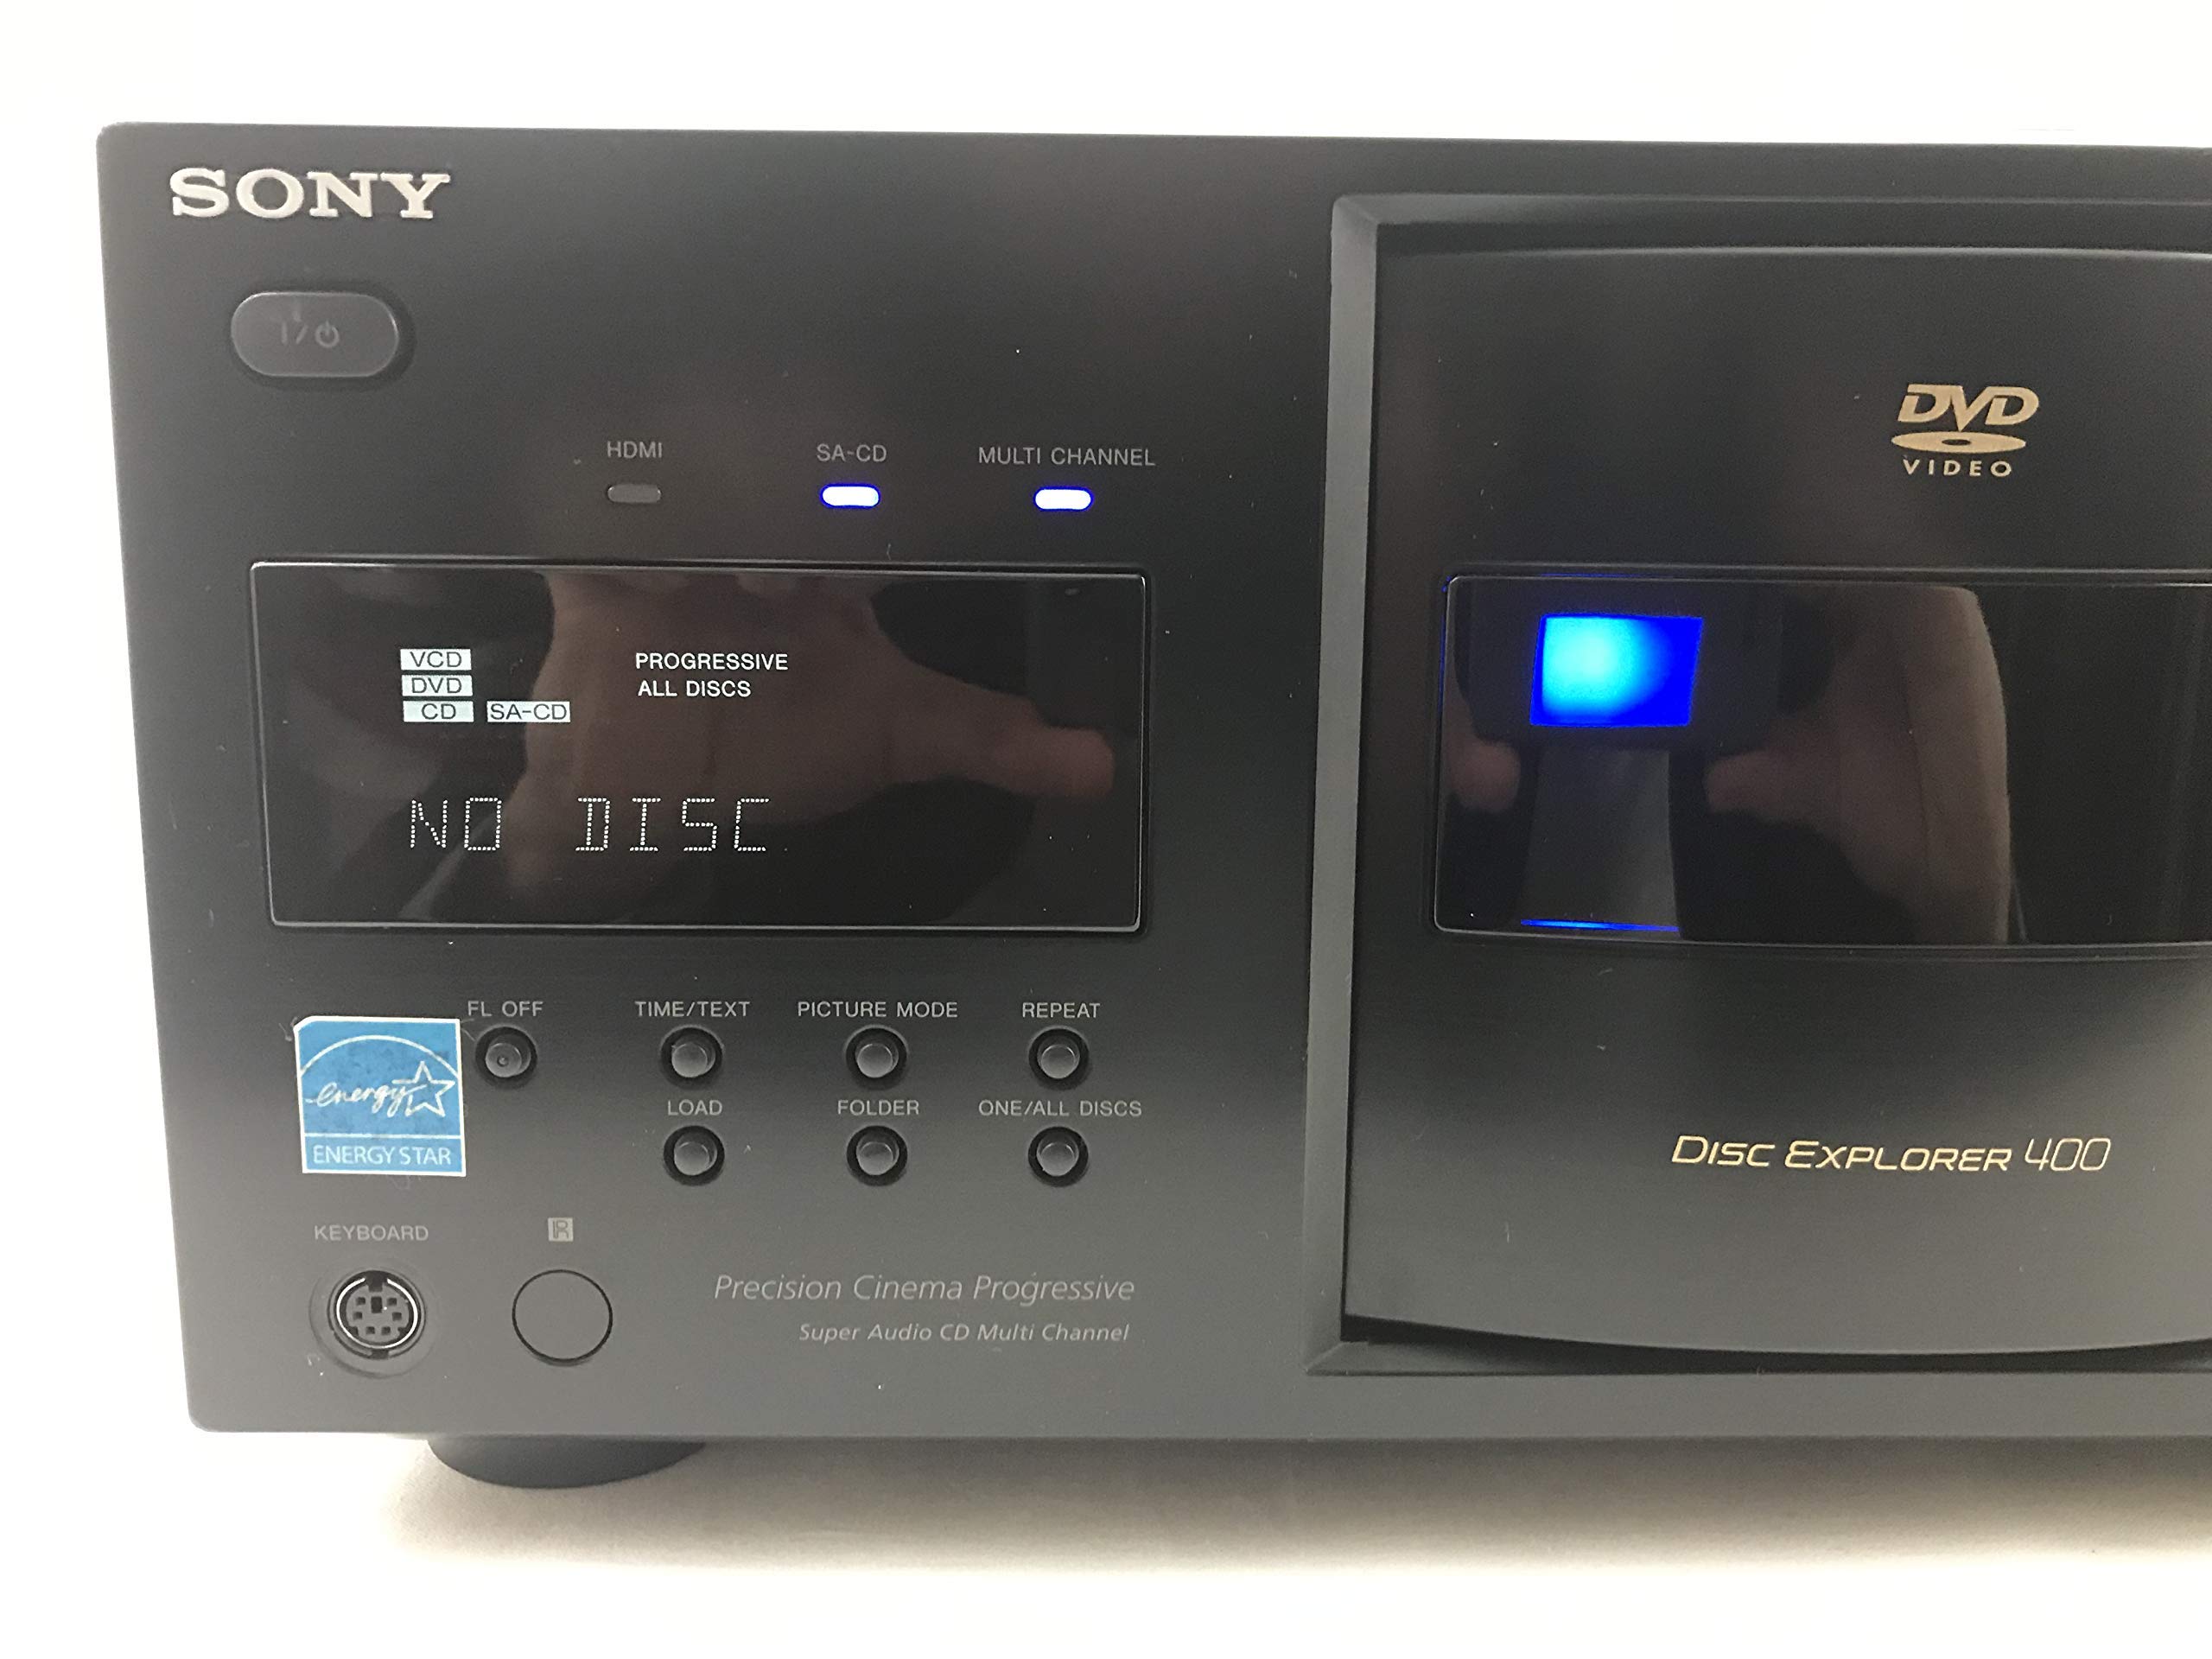 Sony DVPCX995V 400-Disc DVD Mega Changer/Player (2009 Model) (Renewed)